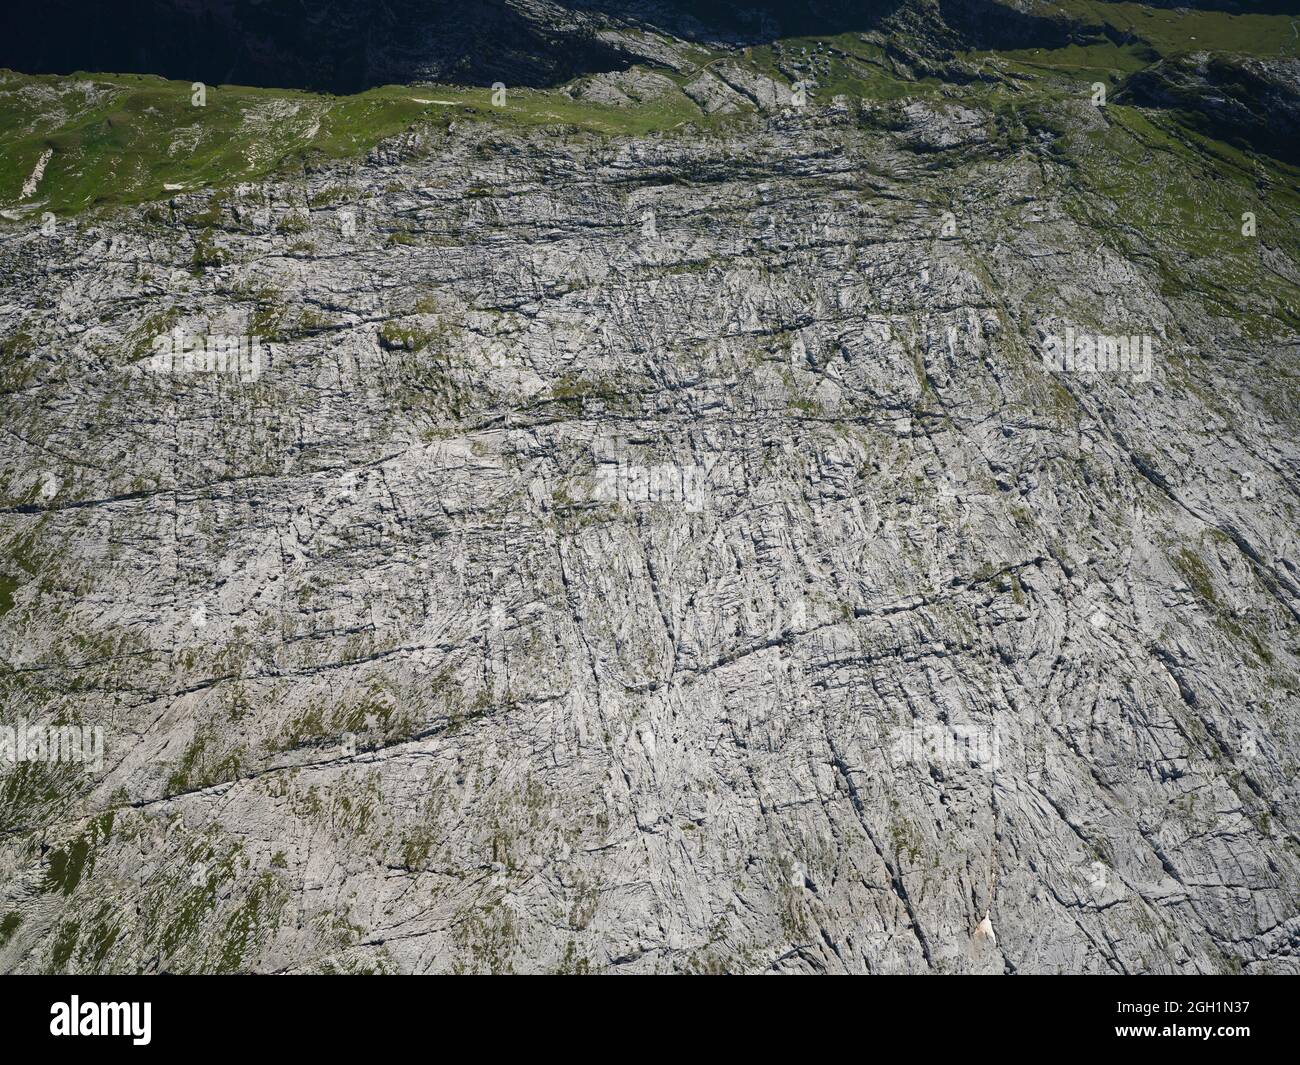 VUE AÉRIENNE. Le désert de Platé est une curiosité géologique du calcaire érodé (lapiaz). Sixt-fer-à-Cheval, haute-Savoie, France. Banque D'Images